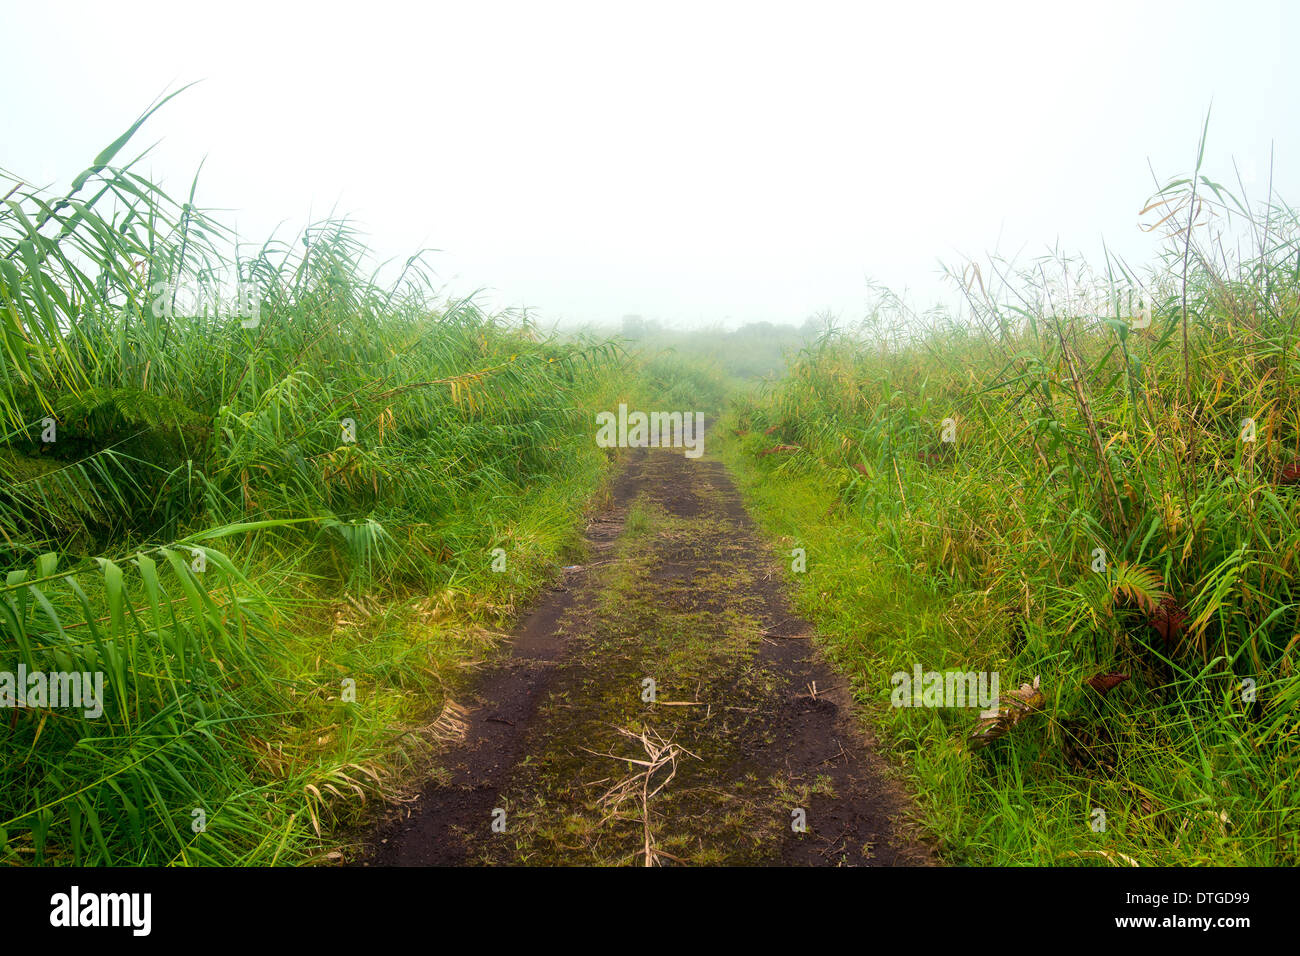 Un remoto campo, camino de tierra bordeado con follaje verde durante un día brumoso Foto de stock